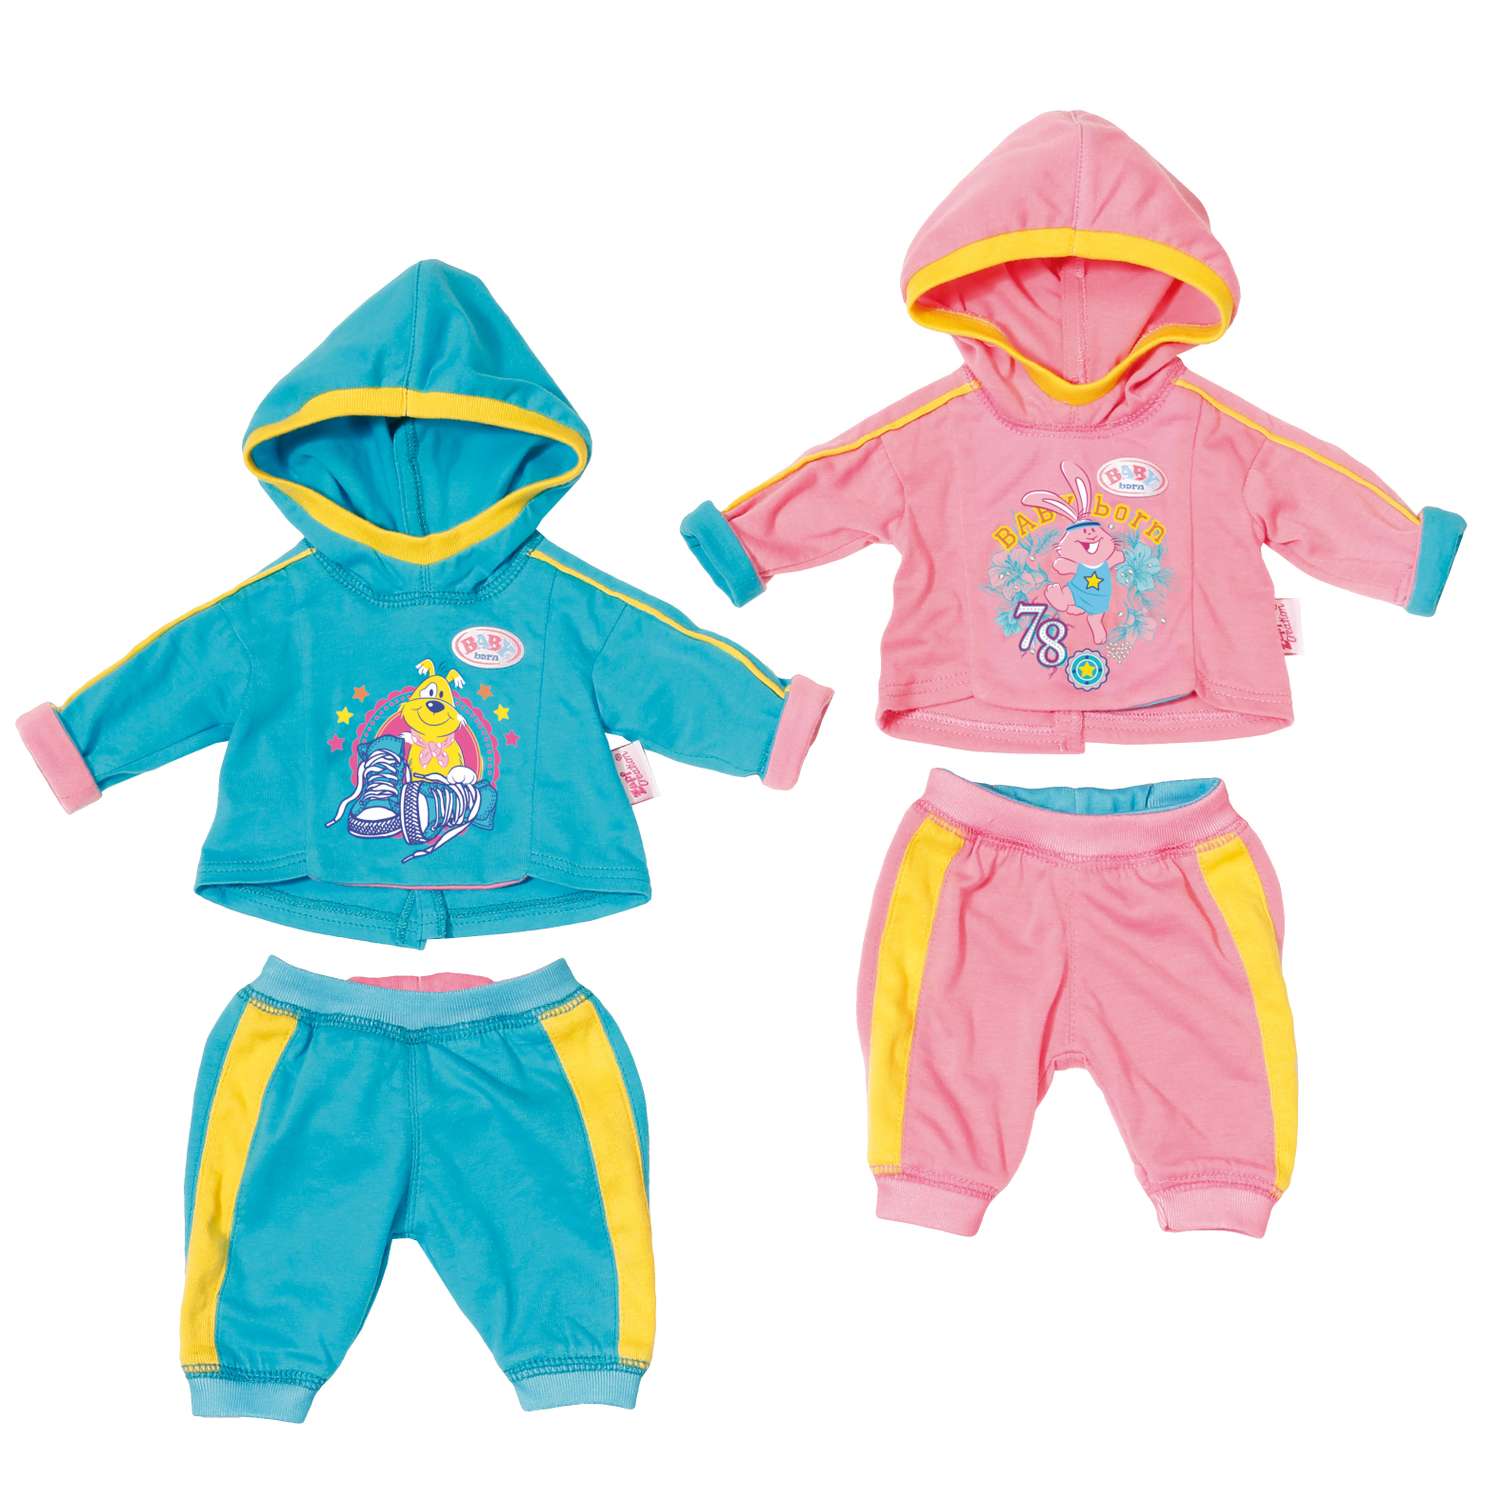 Одежда для кукол Zapf Creation Baby born Спортивный костюм 2шт в ассортименте 823-774 823-774 - фото 1